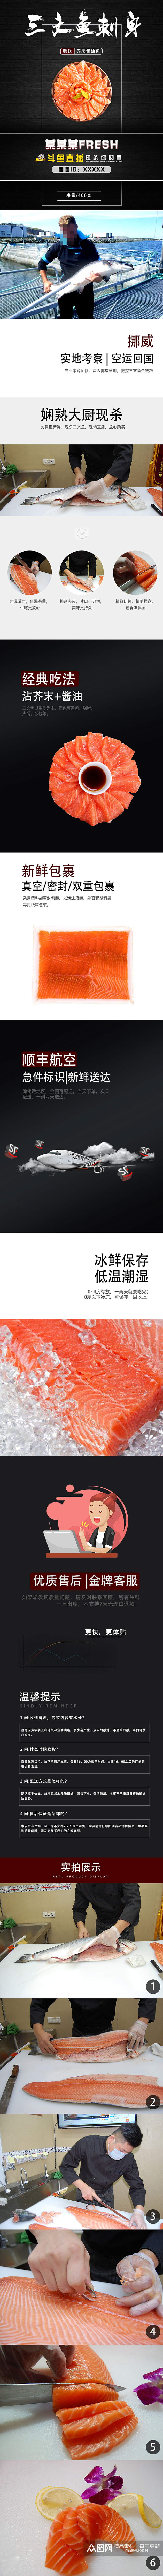 海鲜生鲜美食简洁大气高端美味直播详情页素材